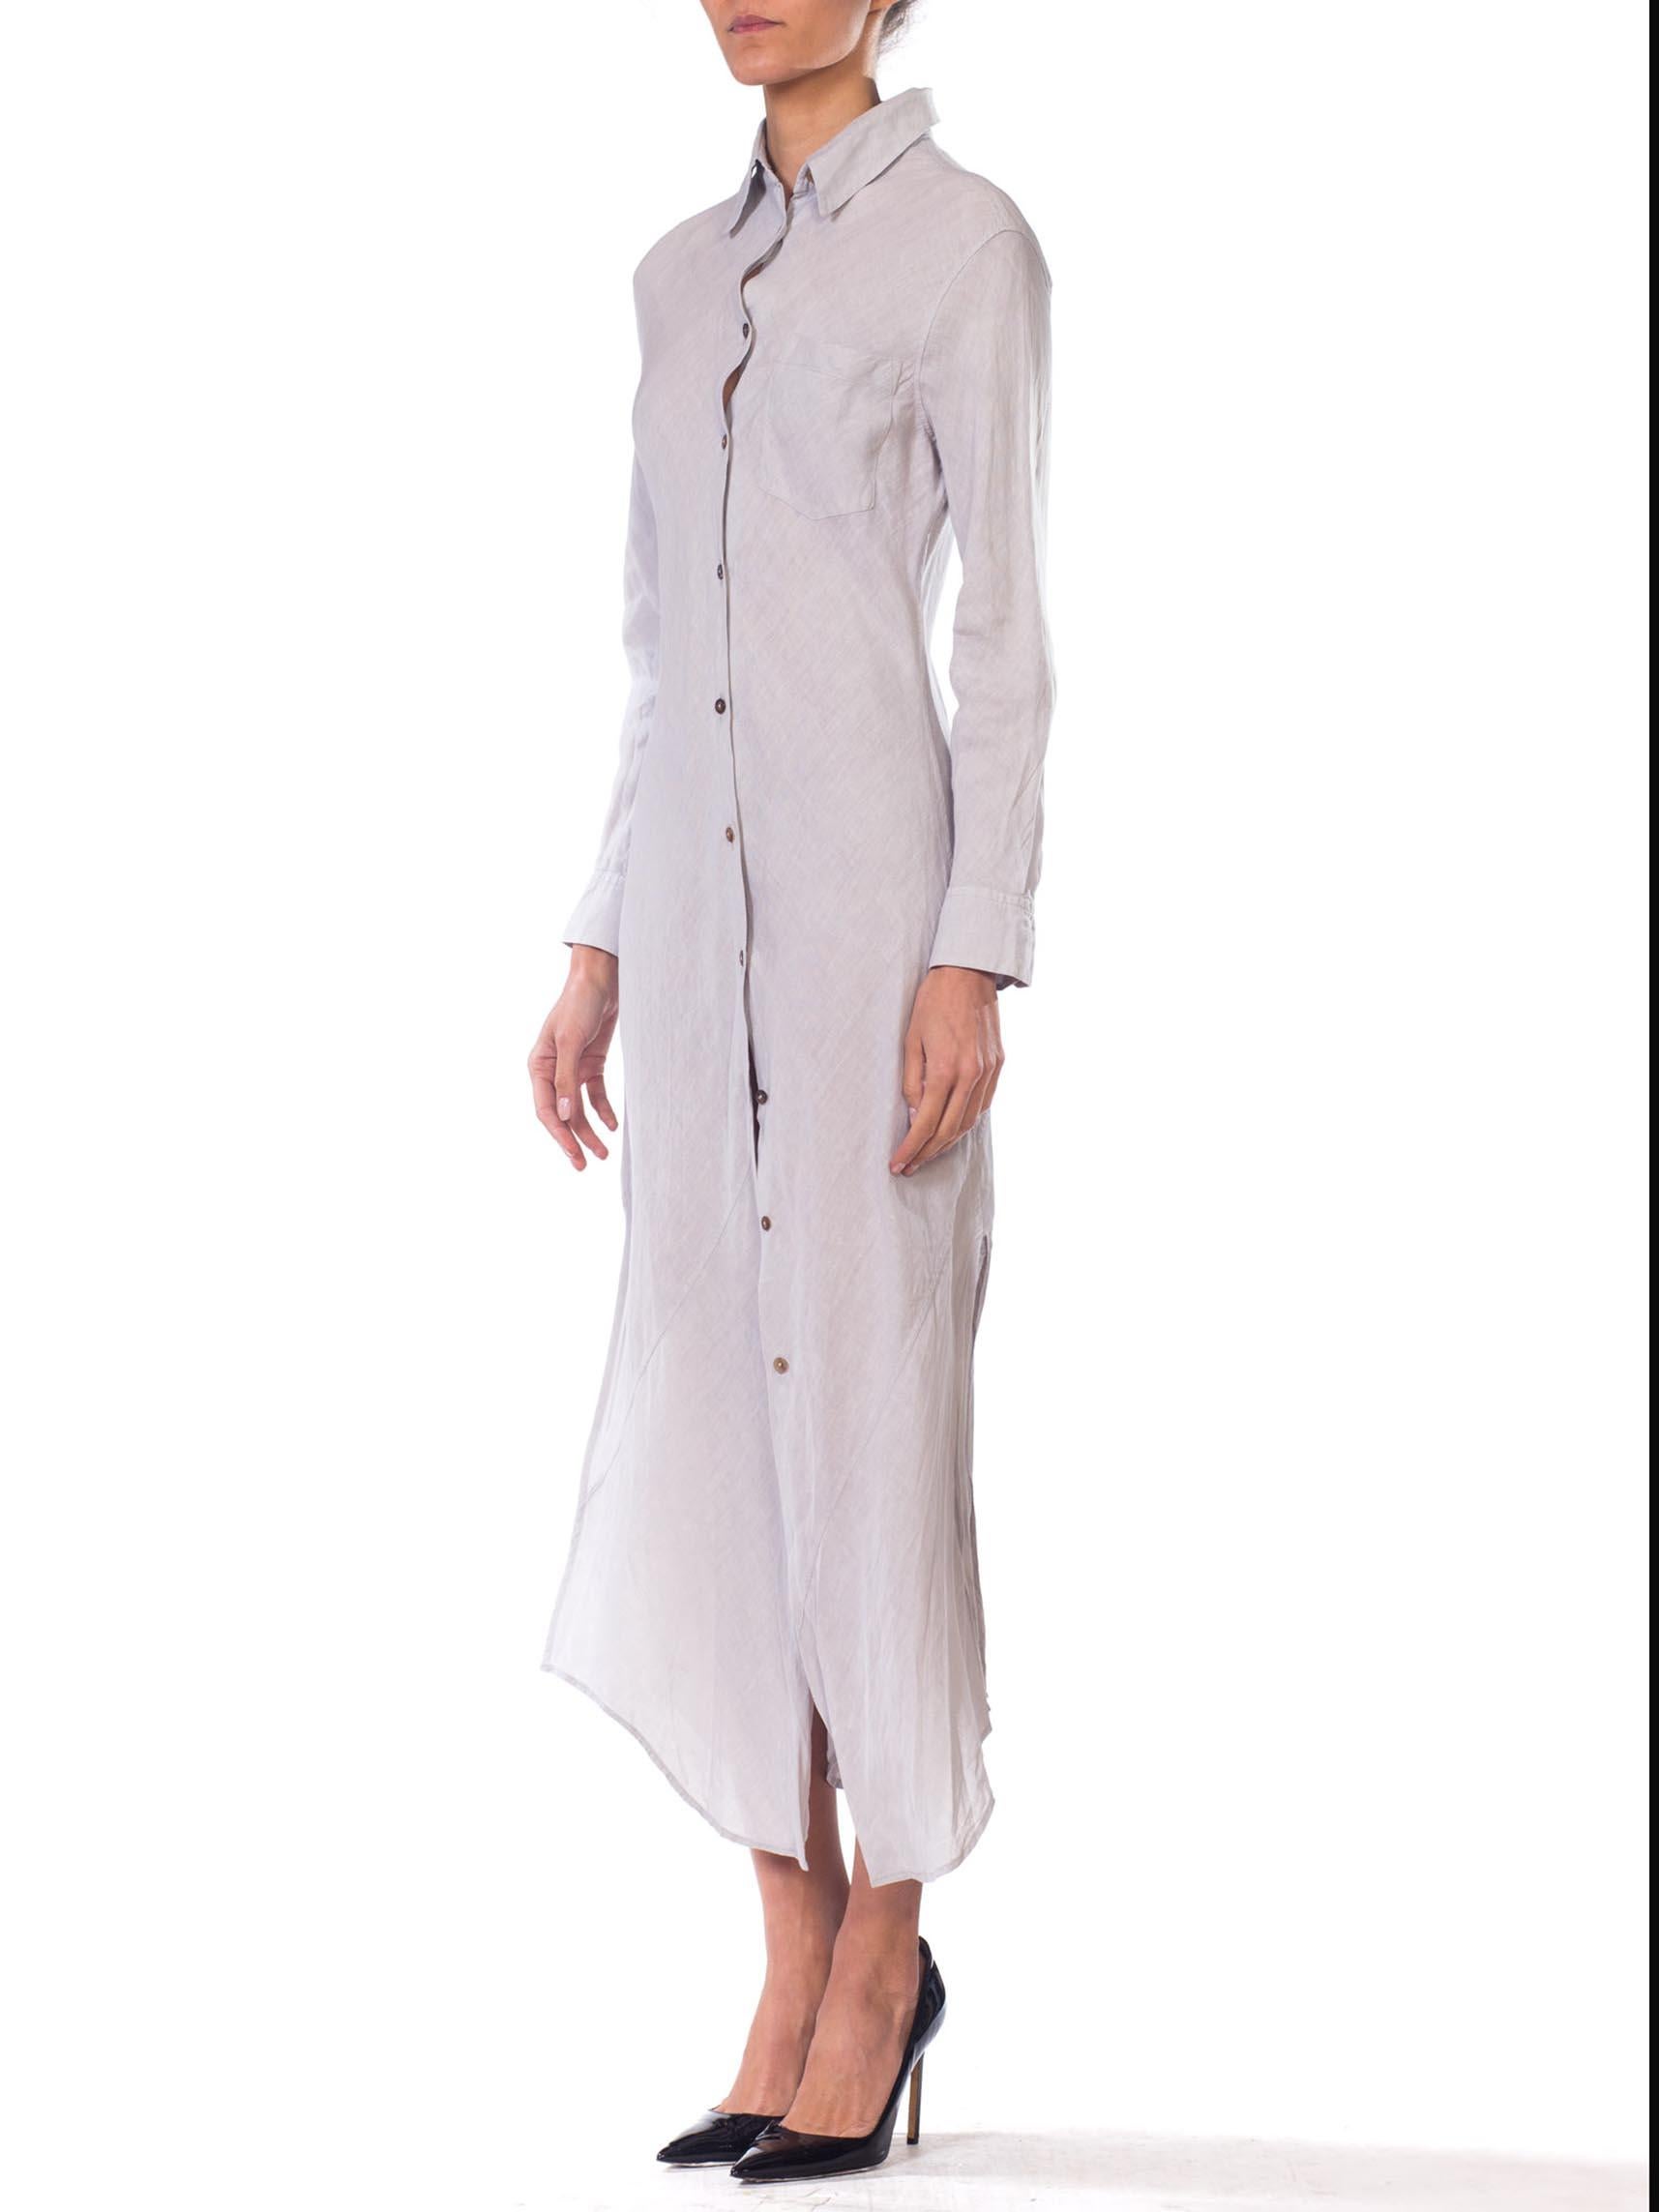 Women's 1990S Jill Sander Dove Grey Bias Cut Linen Shirt Dress With Slit